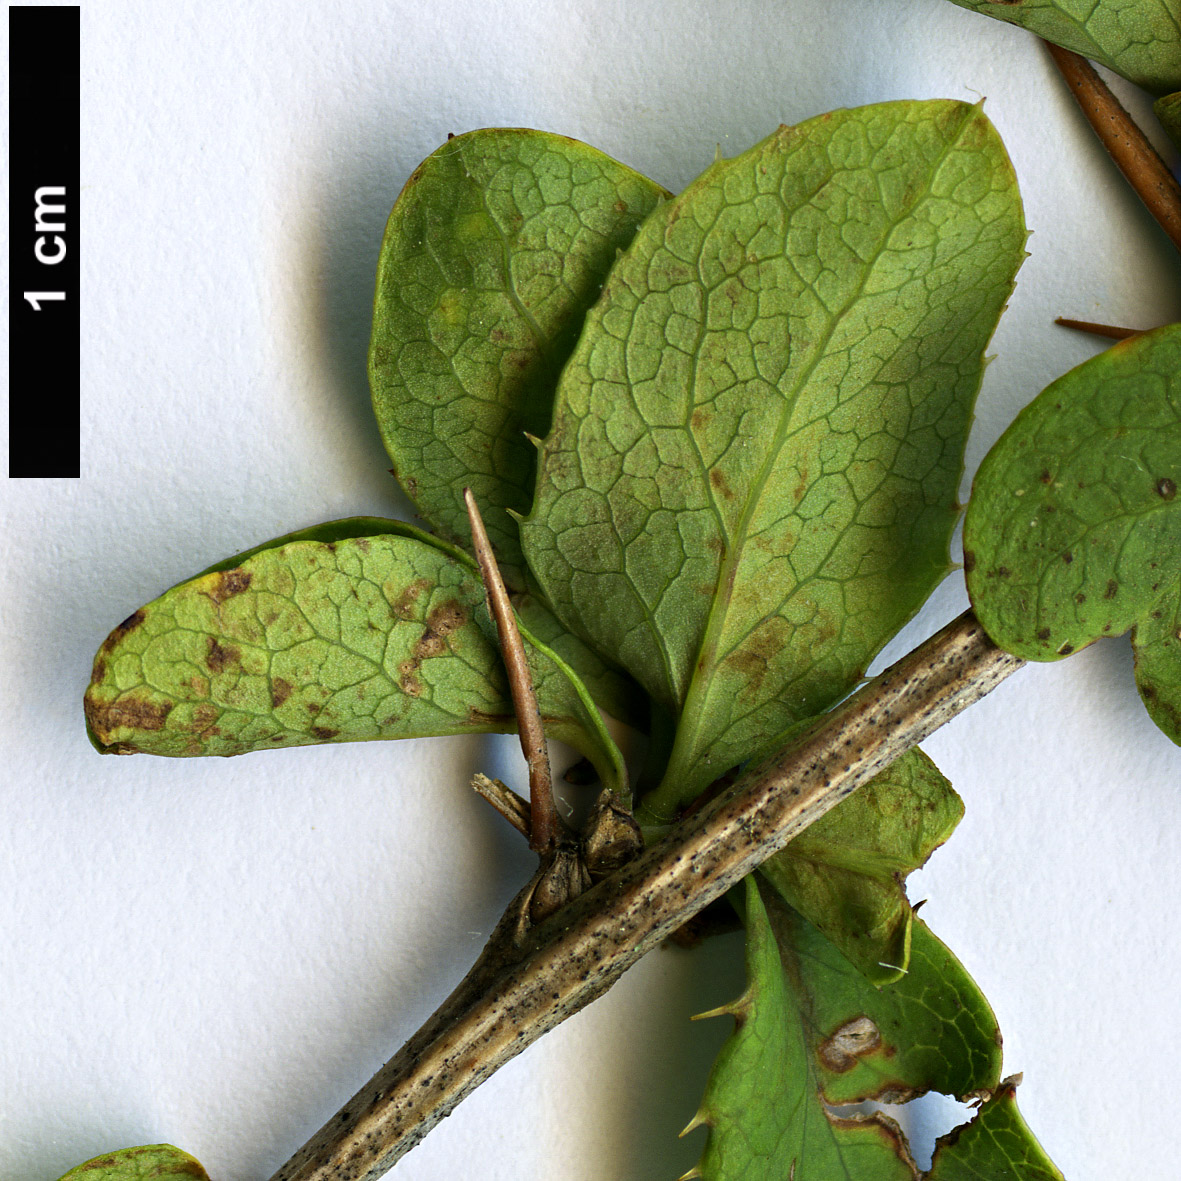 High resolution image: Family: Berberidaceae - Genus: Berberis - Taxon: aetnensis